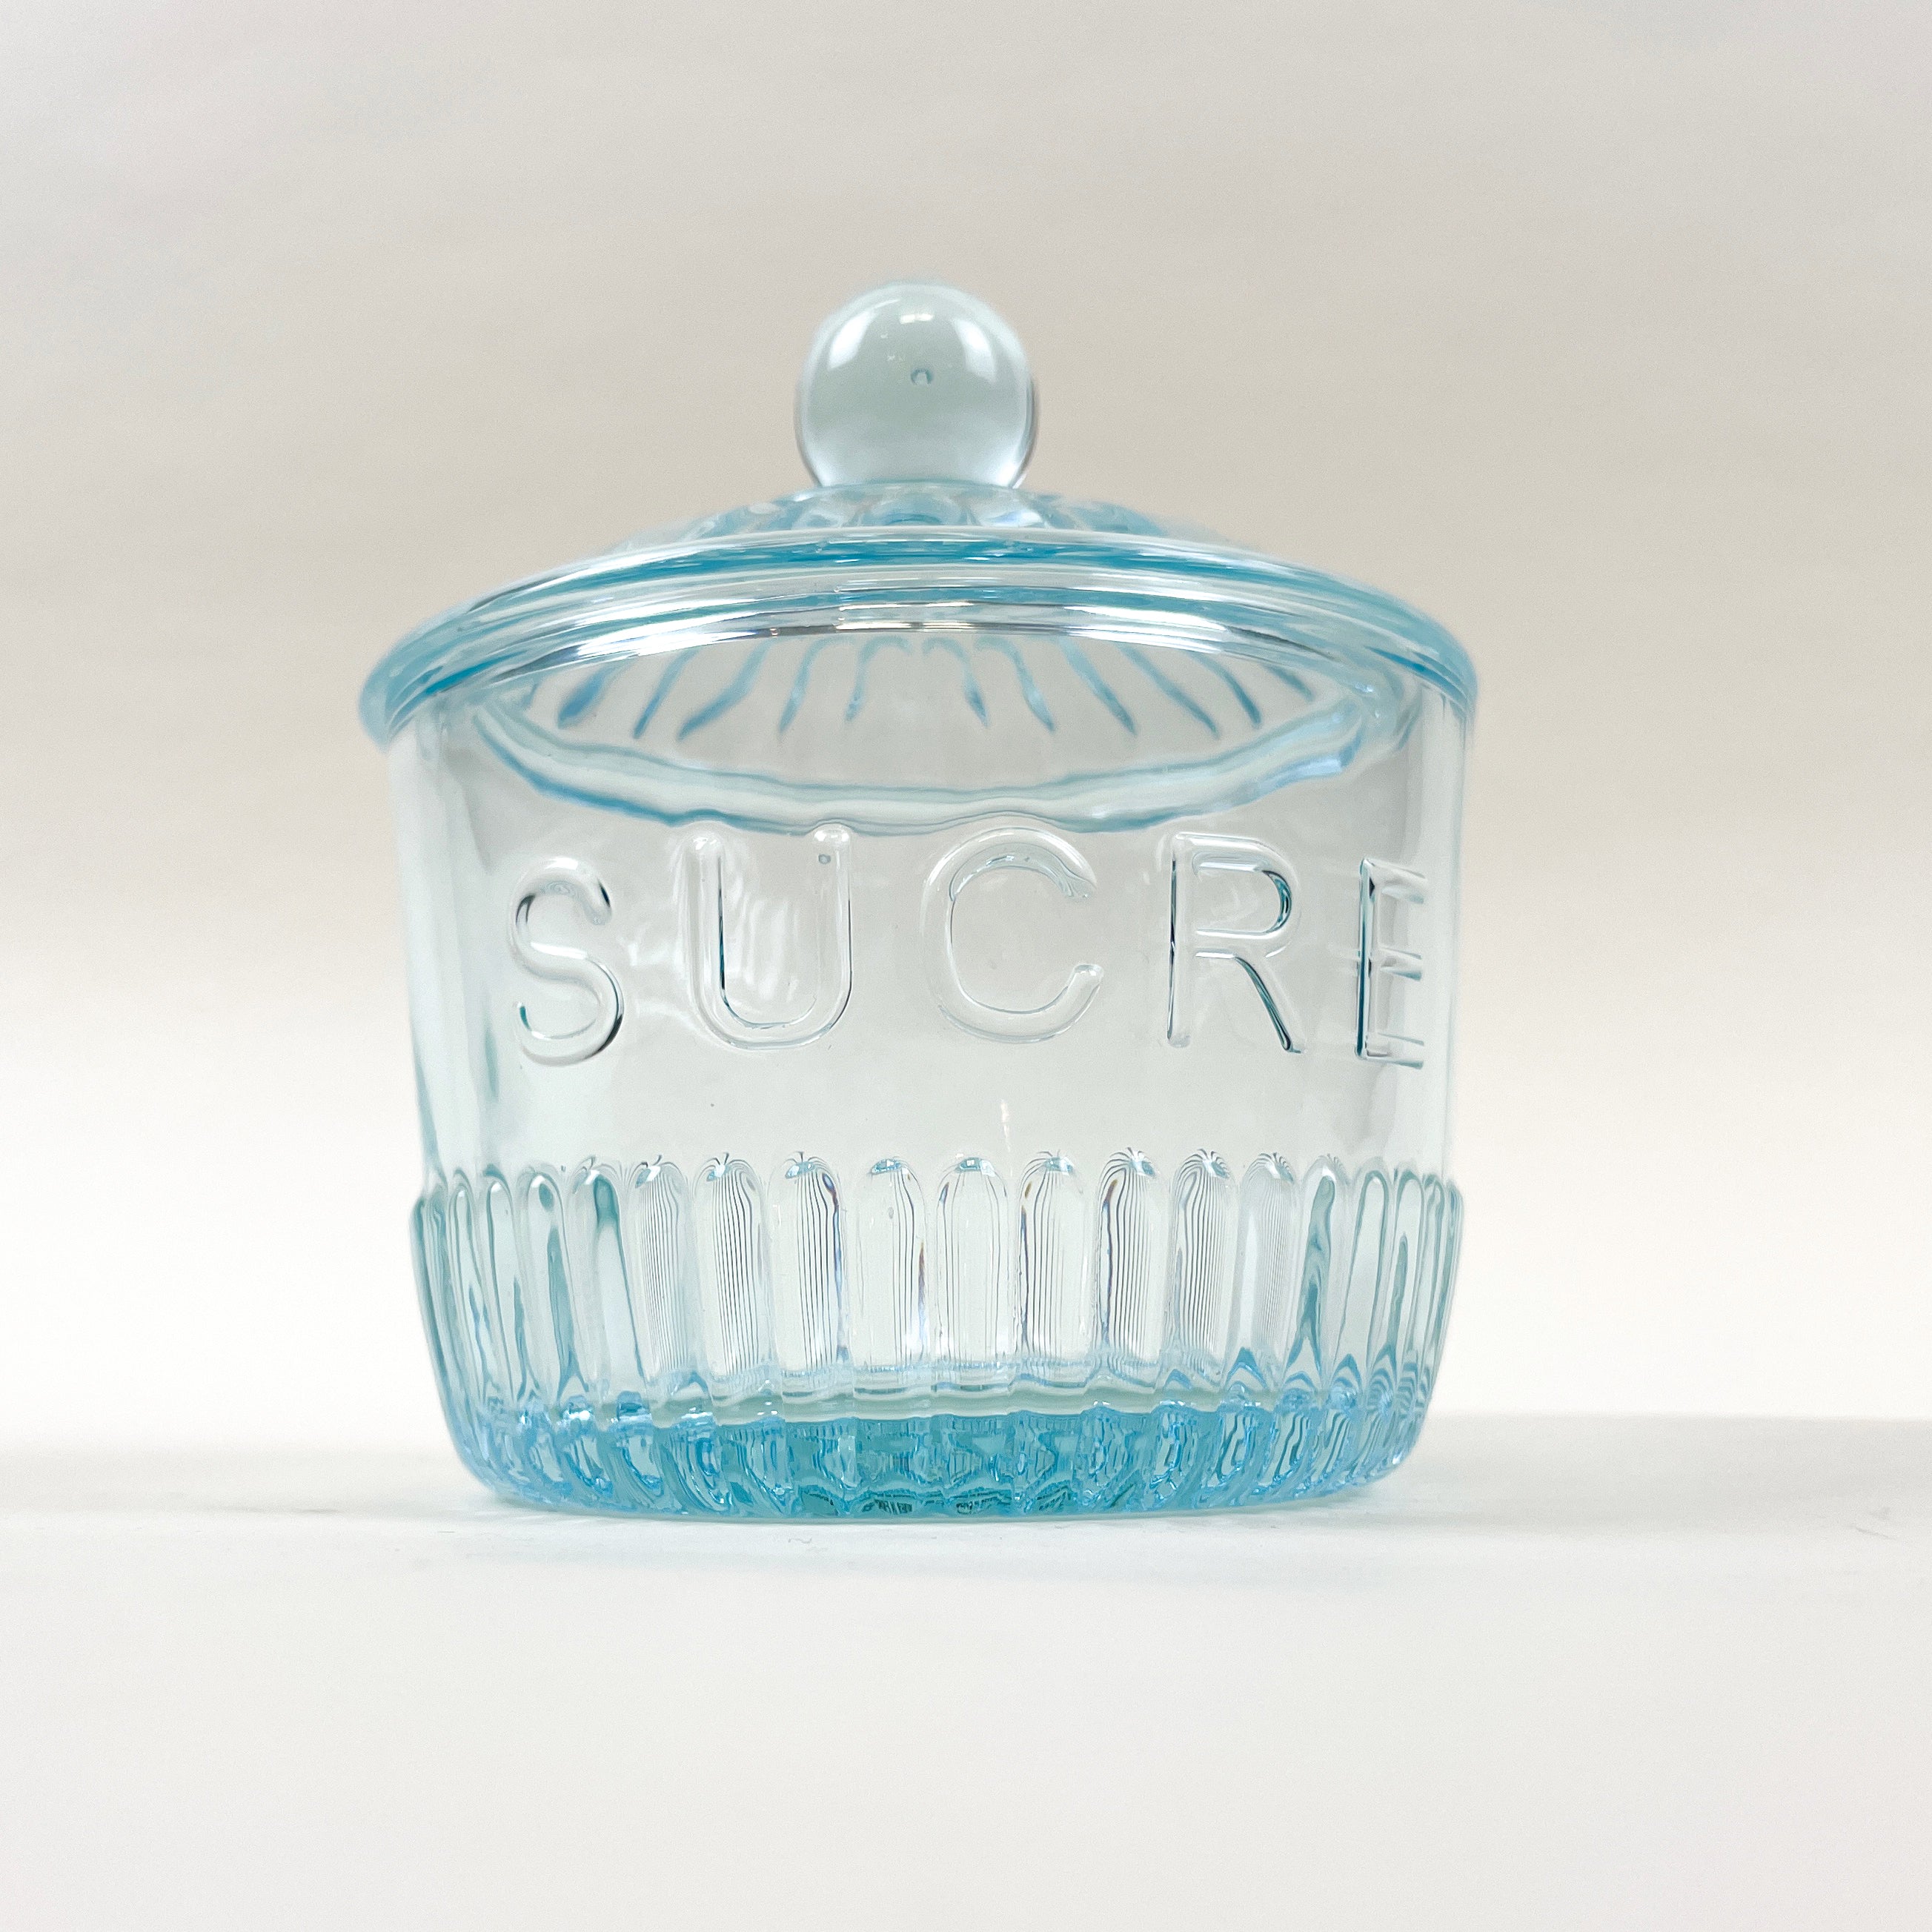 Blue "Sucre" Depression Sugar Jar Glass Depression Glassware Brand_Depression Depression Glassware Kitchen_Serveware Kitchen_Storage KTFWHS IMG_3384